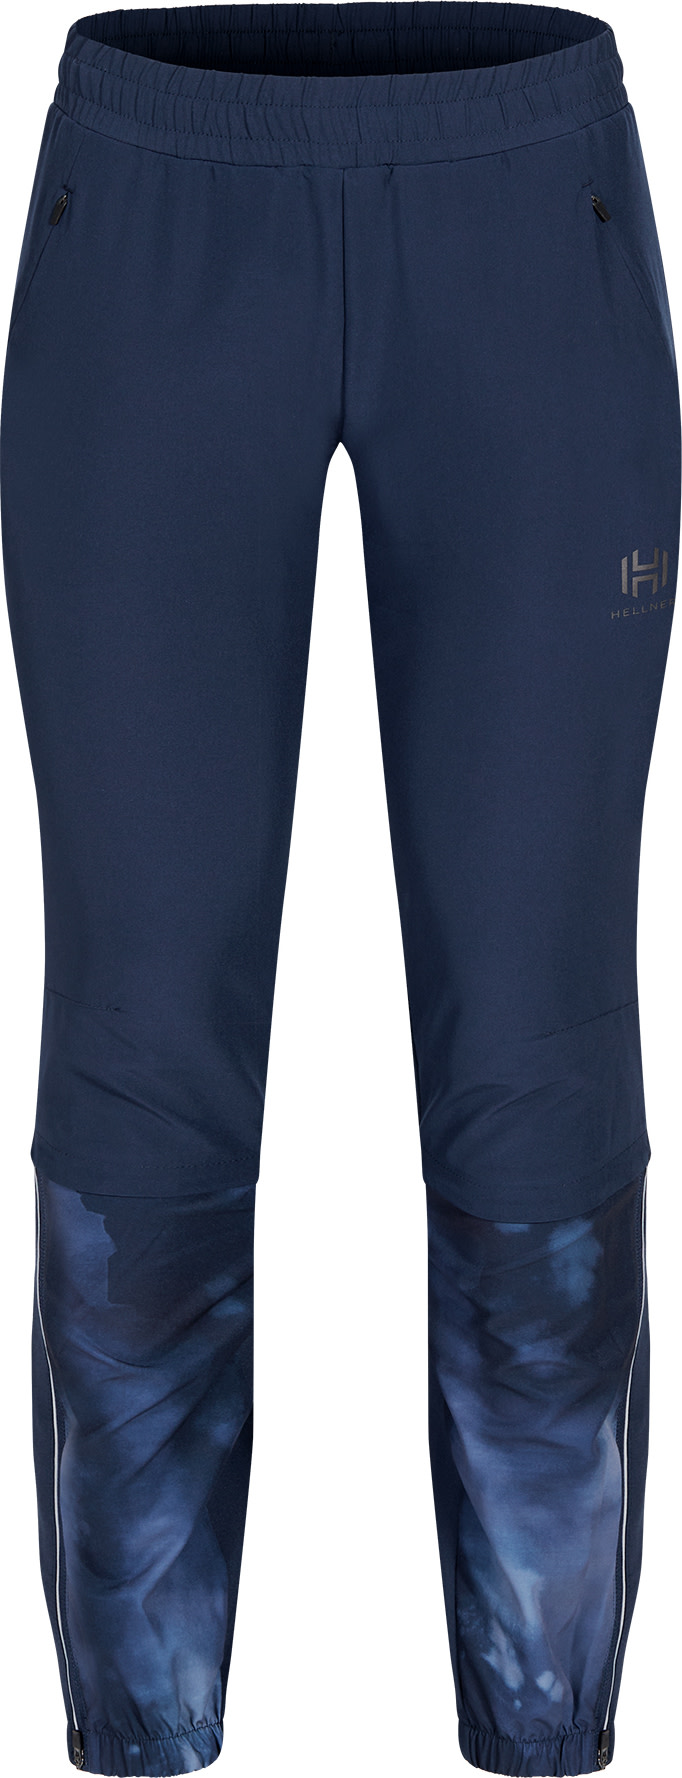 Hellner Hellner Women's Harrå Hybrid Pants 2.0 Dress Blue L, Dress Blue